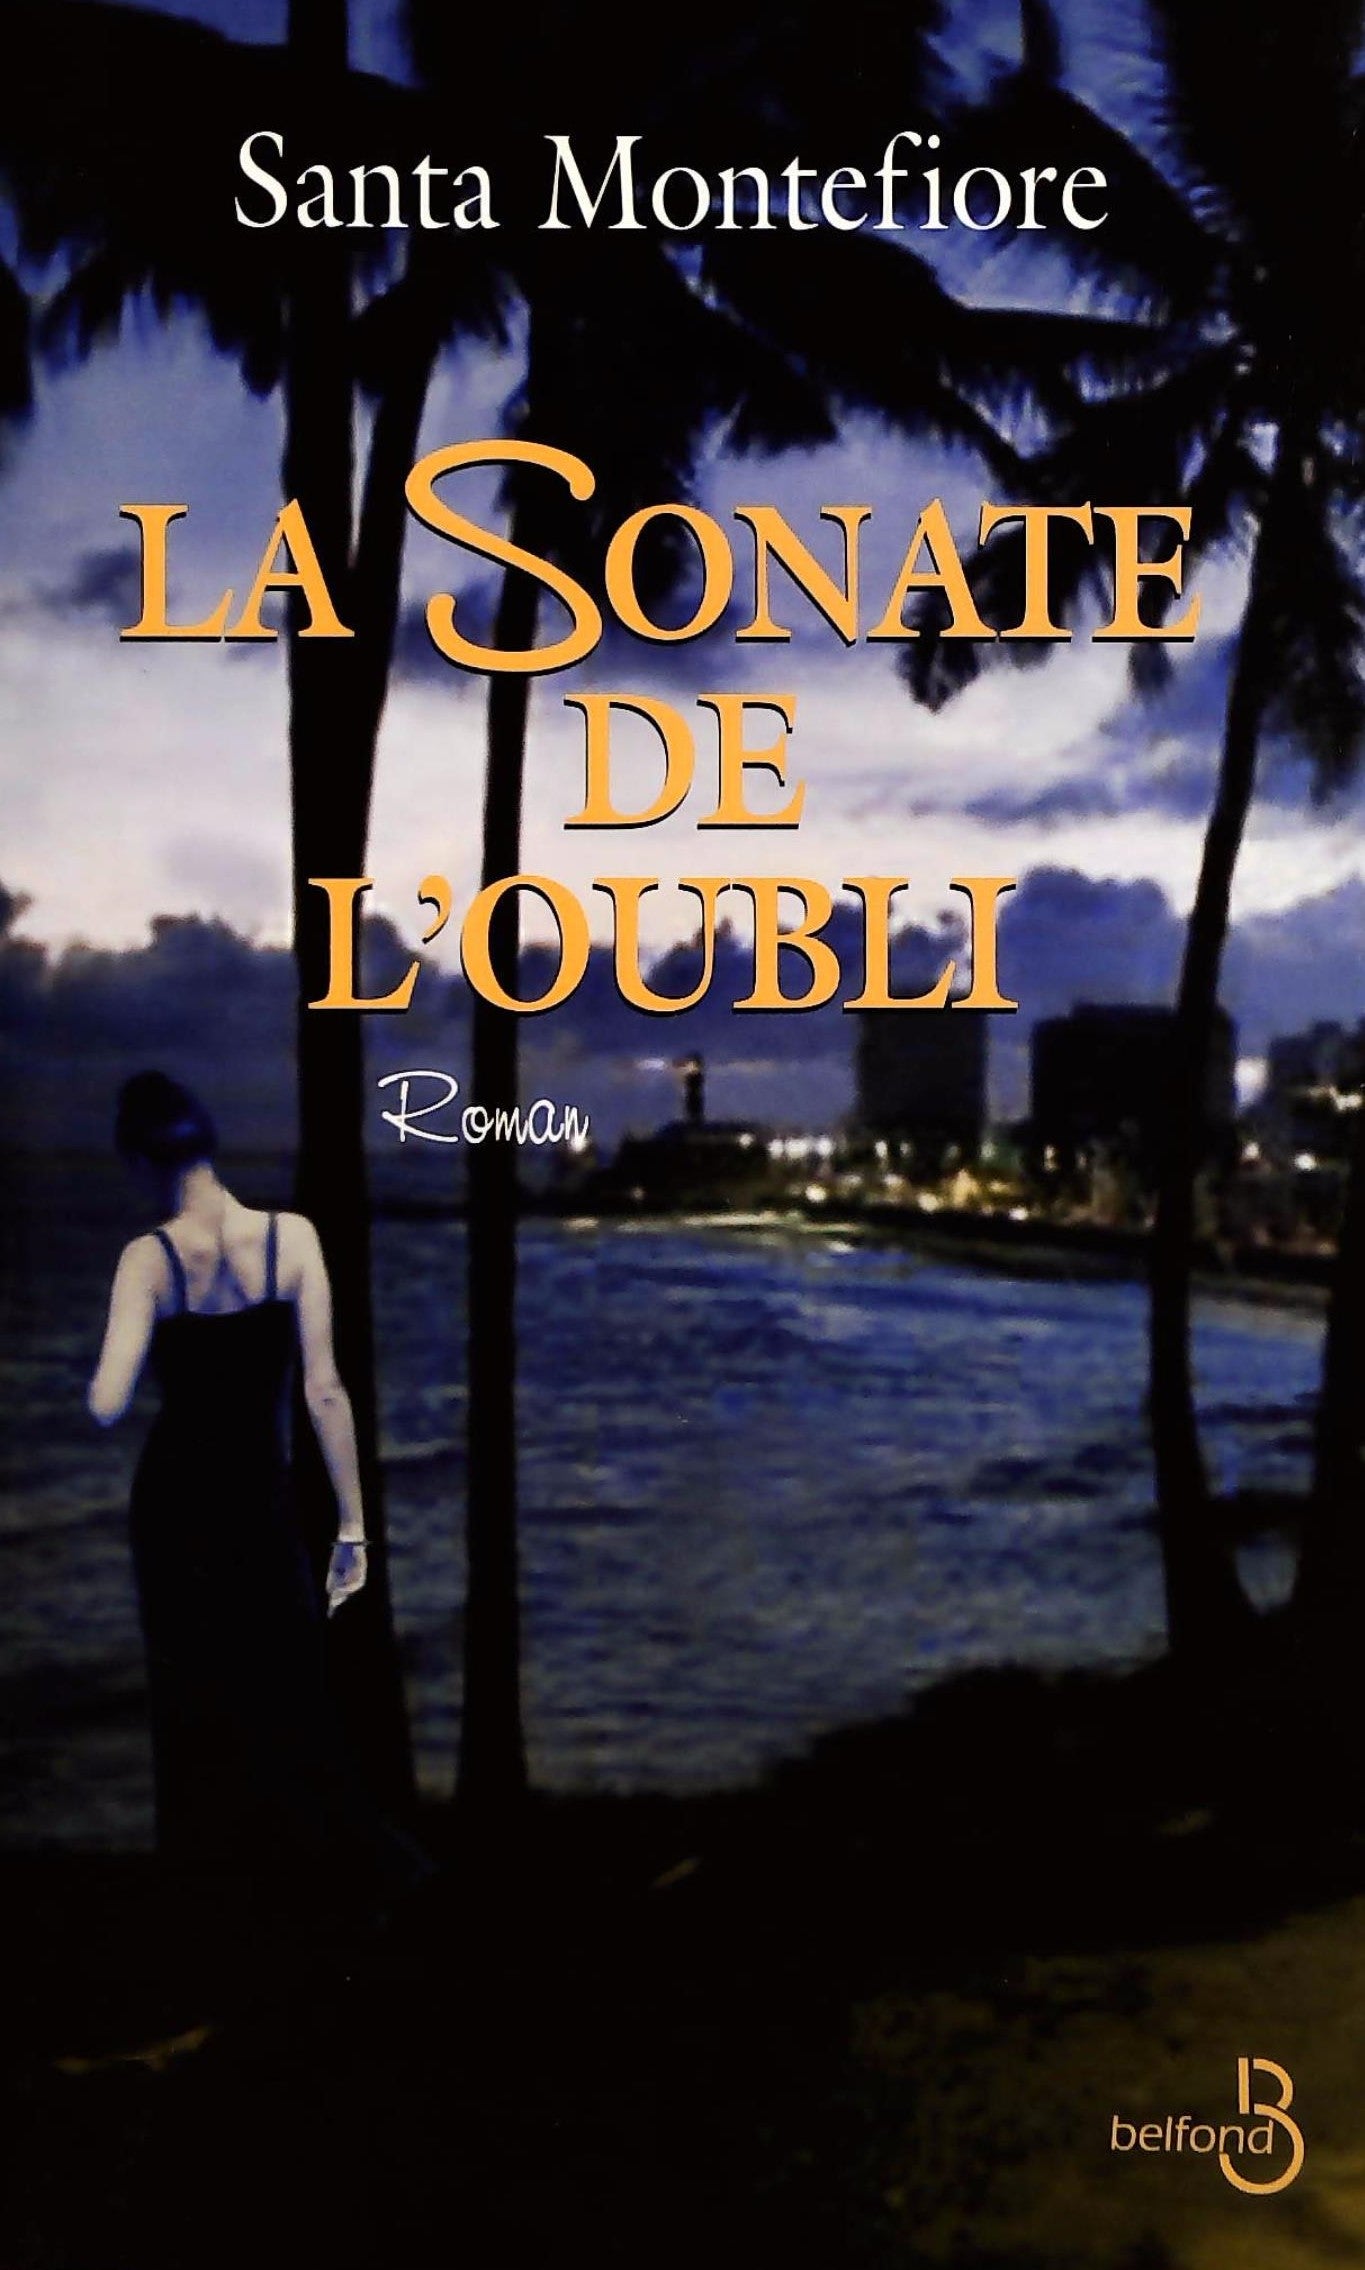 Livre ISBN 2714440010 La sonate de l'oubli (Santa Montefiore)